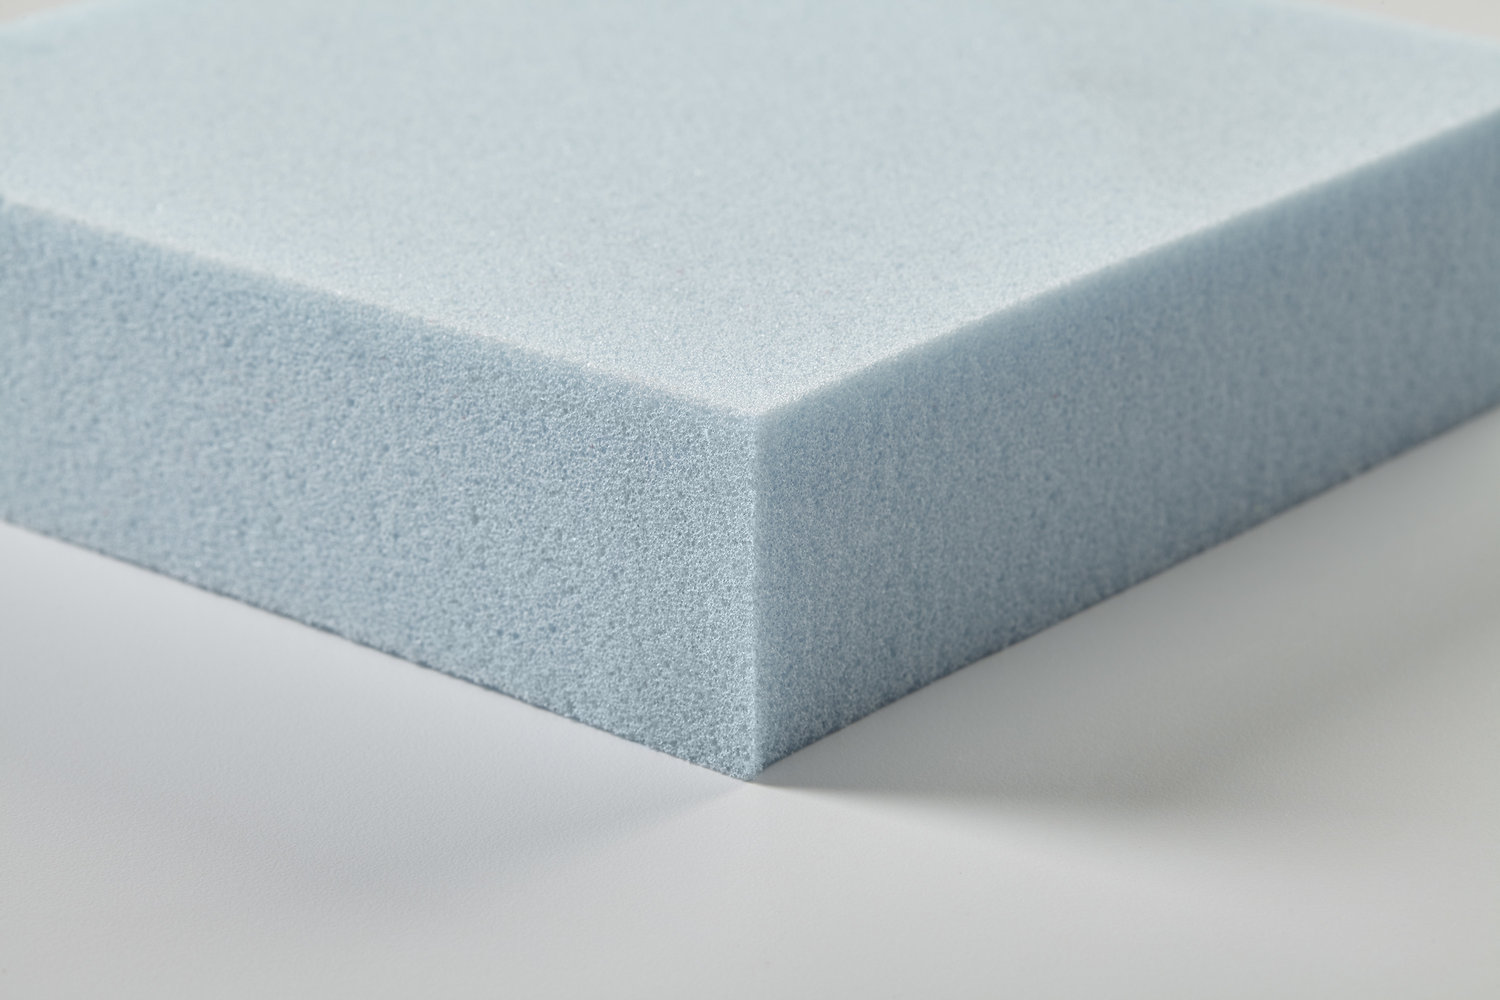 Echt Weiland peper Foamcraft, Inc. — Foam Materials